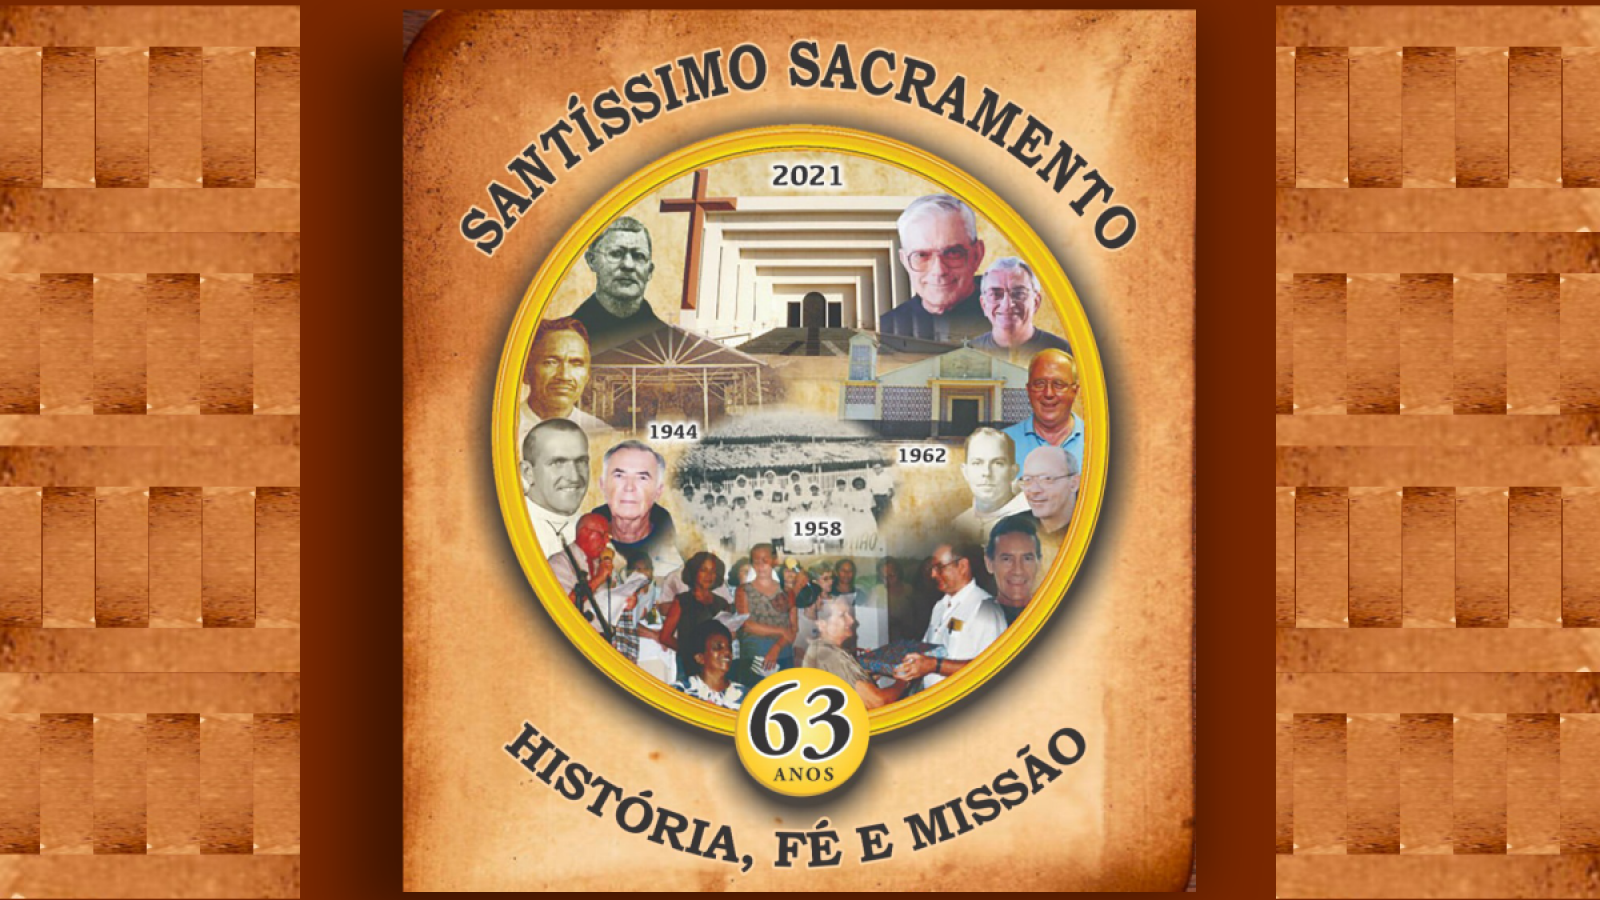 Cartaz comemorativo dos 63 anos da Comunidade. Fonte: Paróquia Santíssimo Sacramento